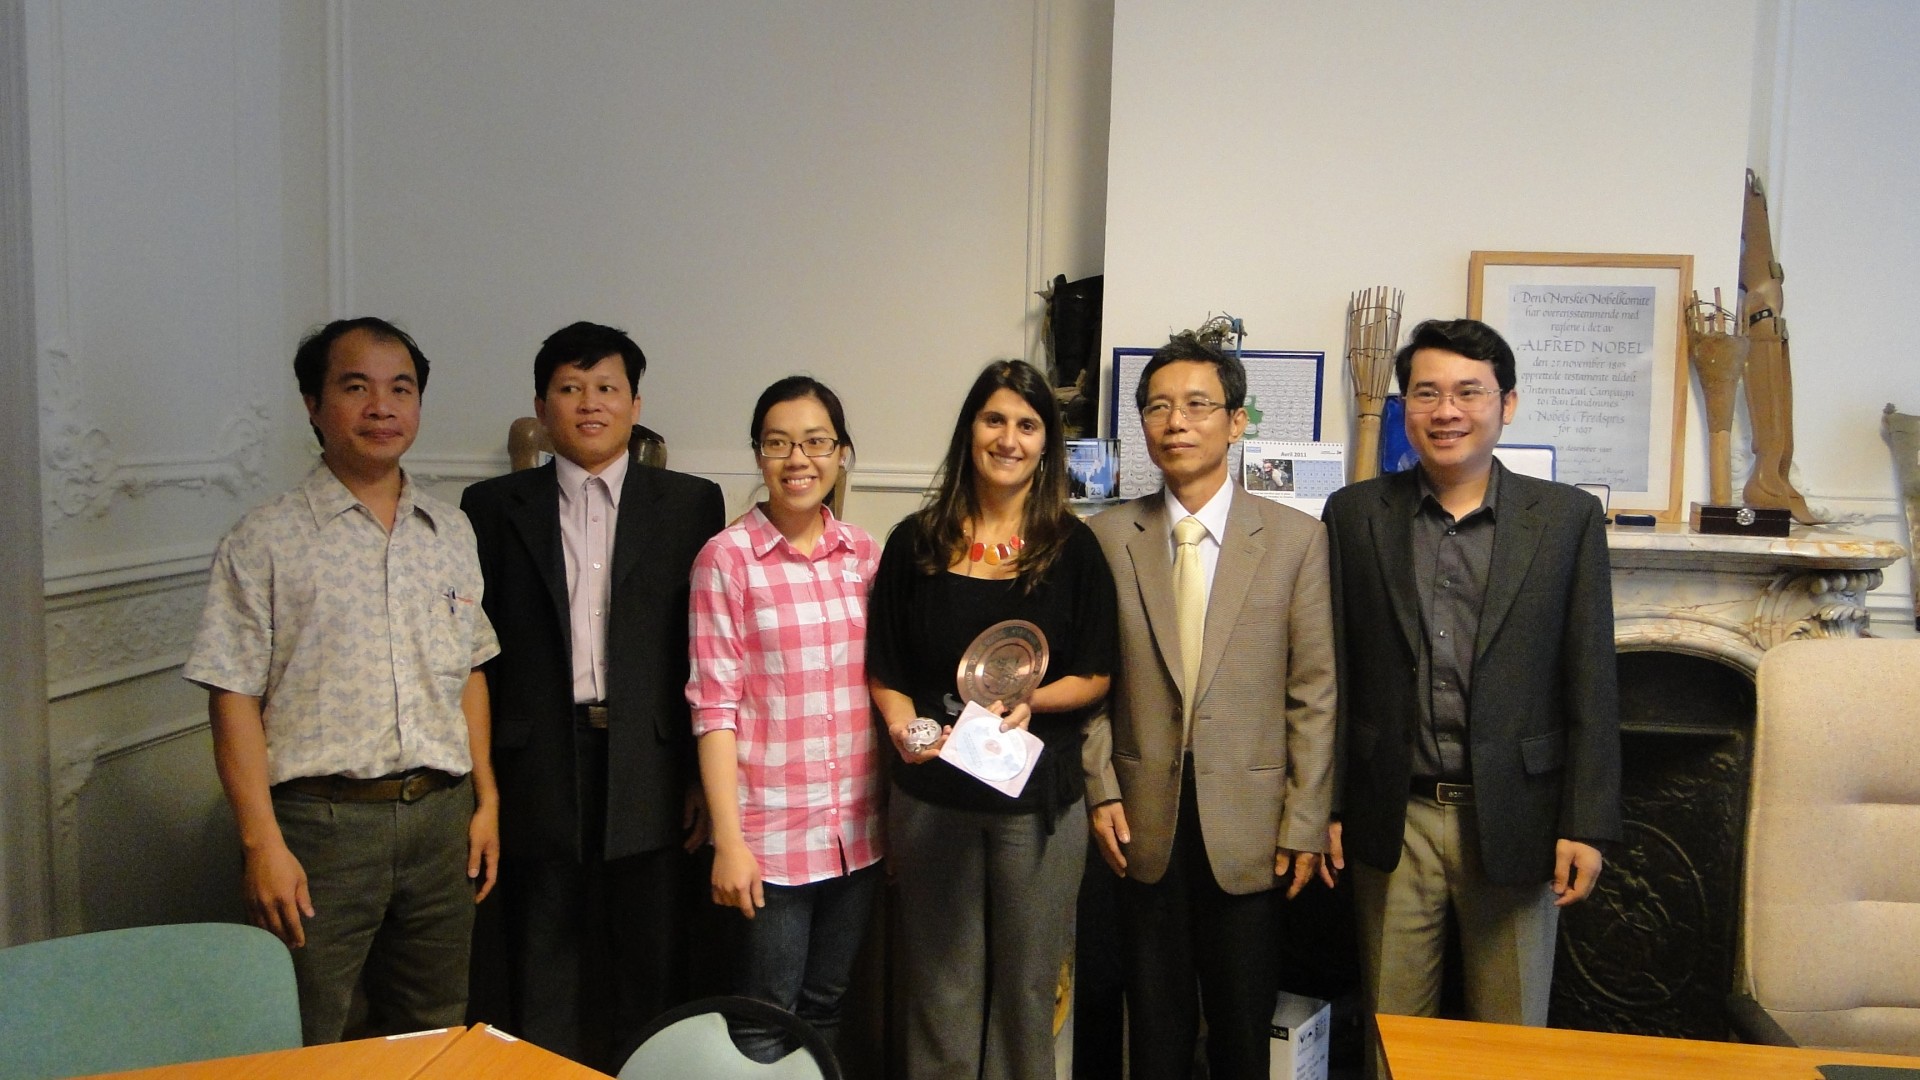 Vietnamese artsen bij Handicap International in Brussel.